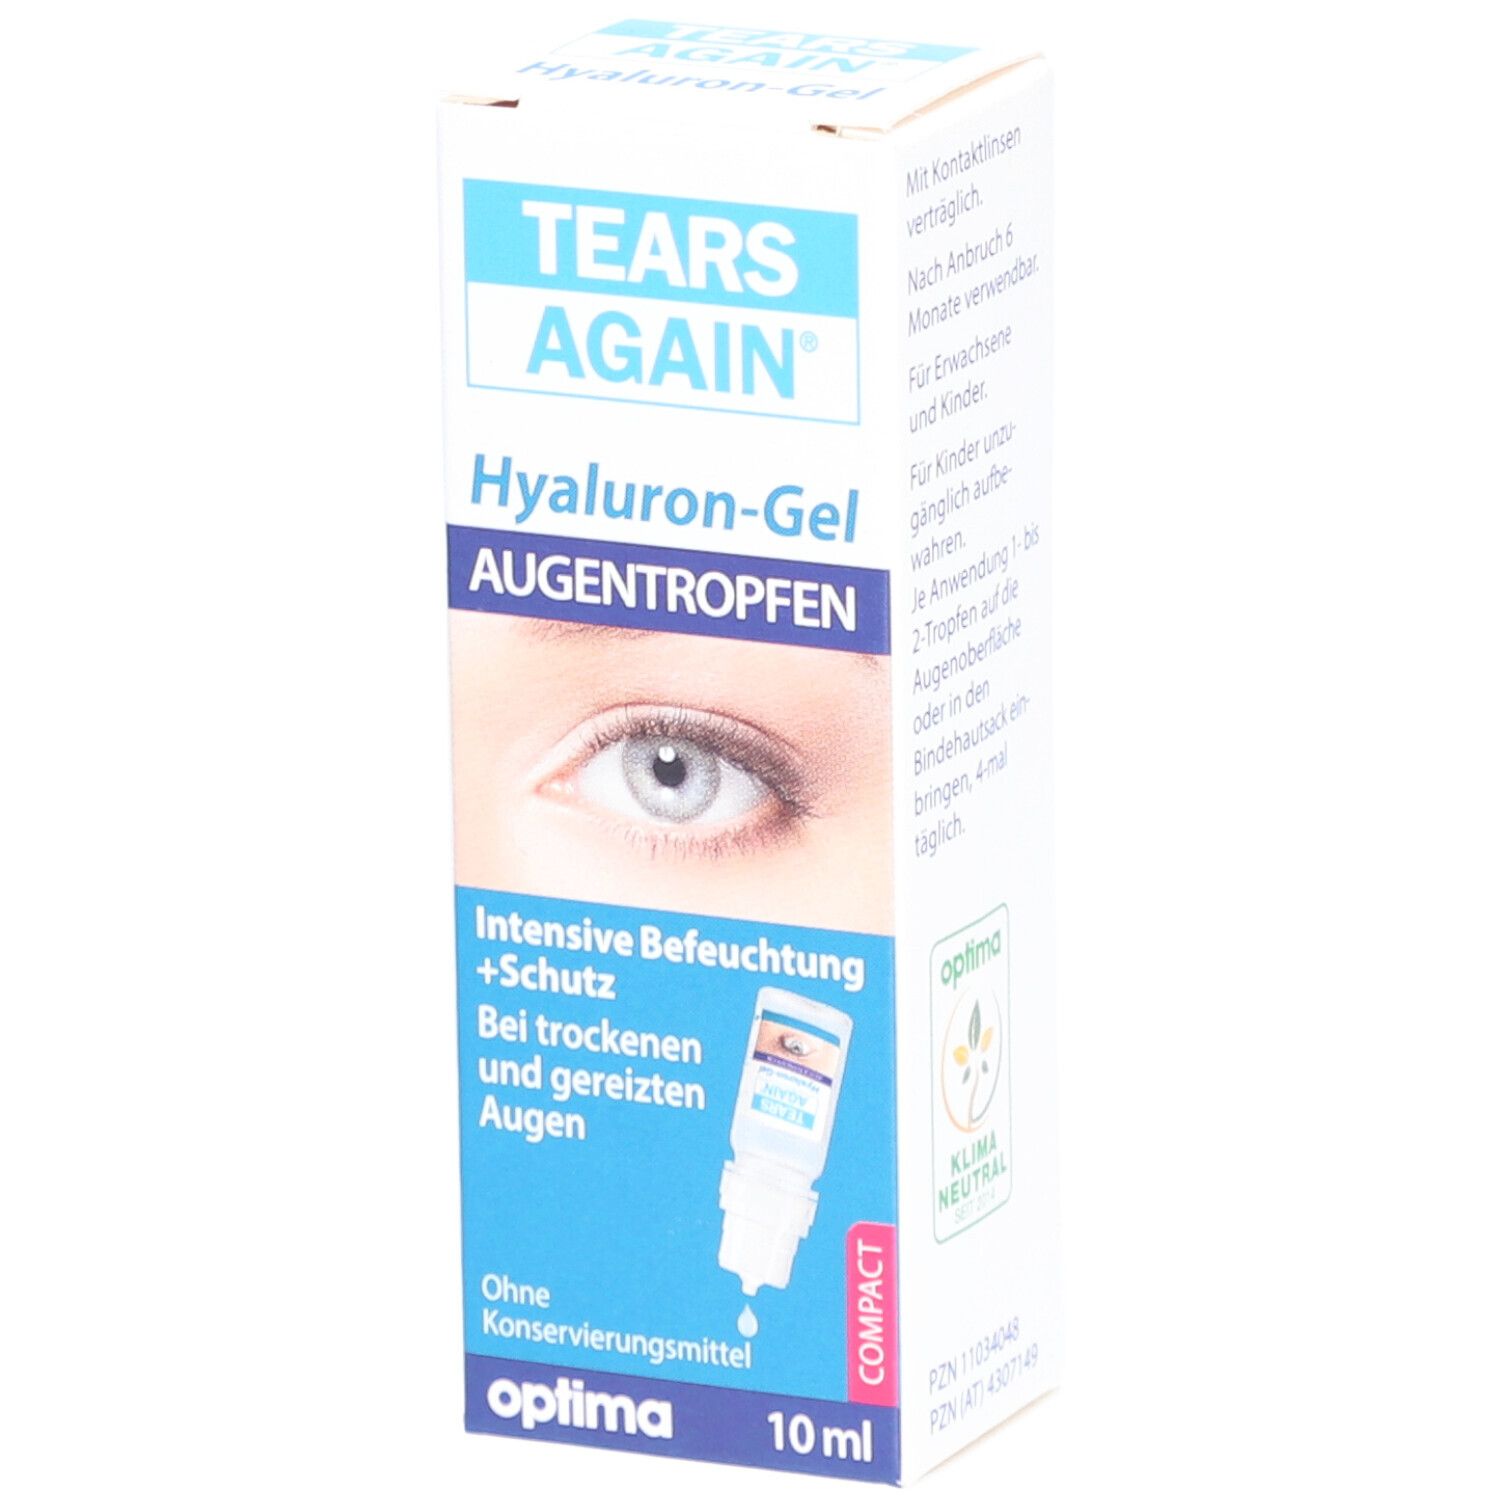 TEARS AGAIN Gel Augentropfen Hyaluron 0,3%